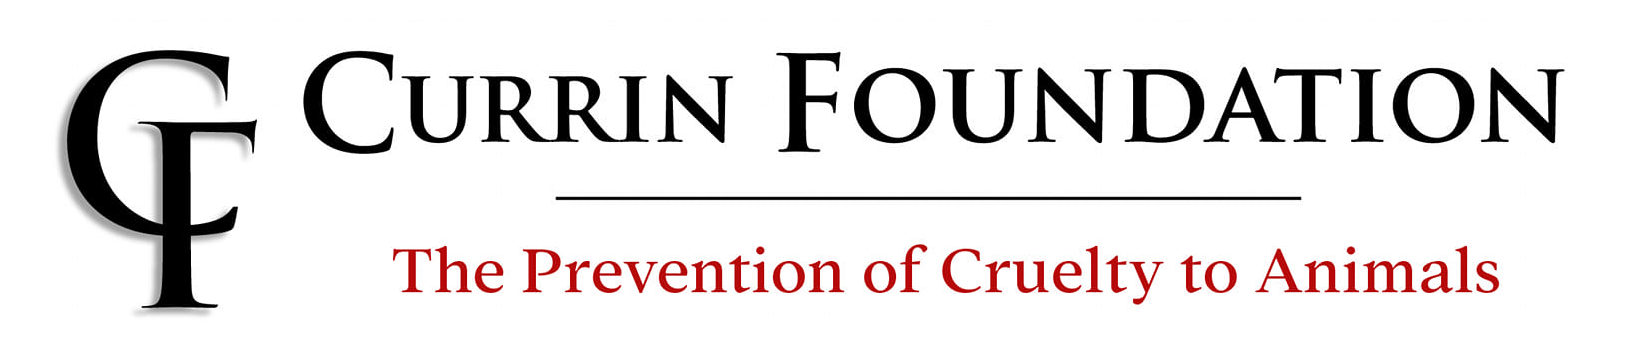 Currin Foundation